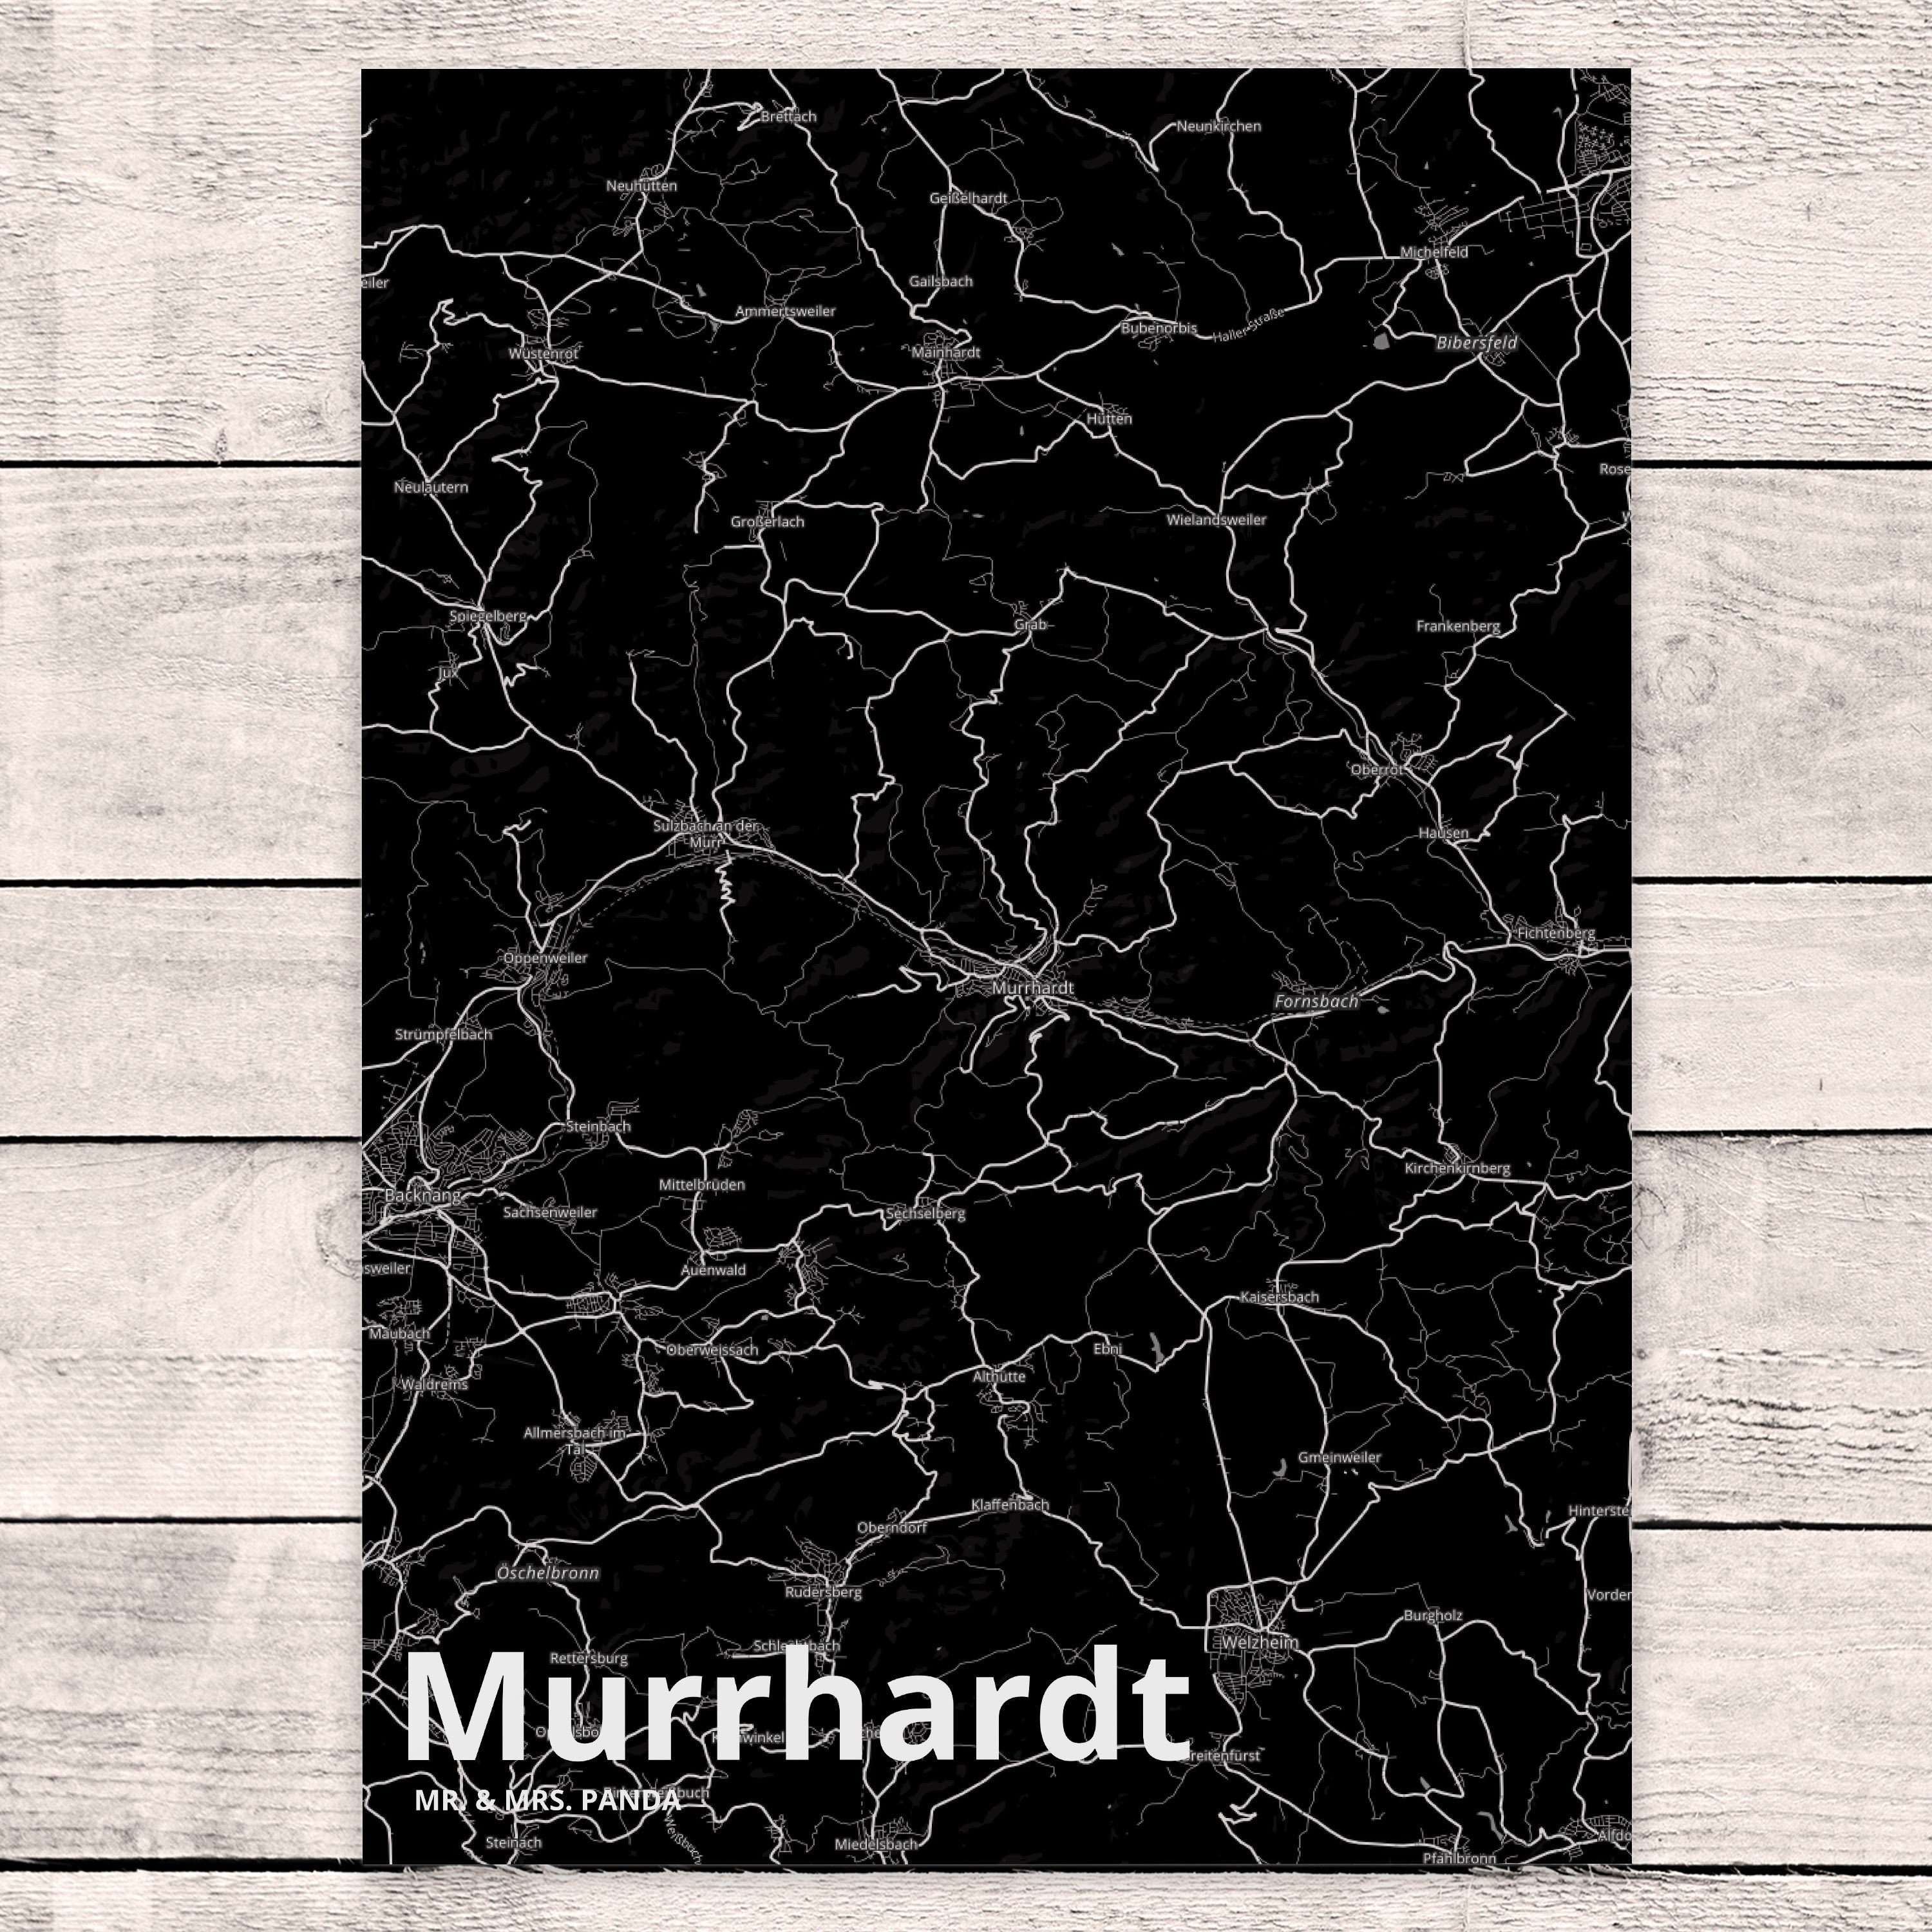 Mr. & Mrs. - Einladung Murrhardt Einladungskarte, Ansichtskarte, Geschenk, Panda Postkarte Ort